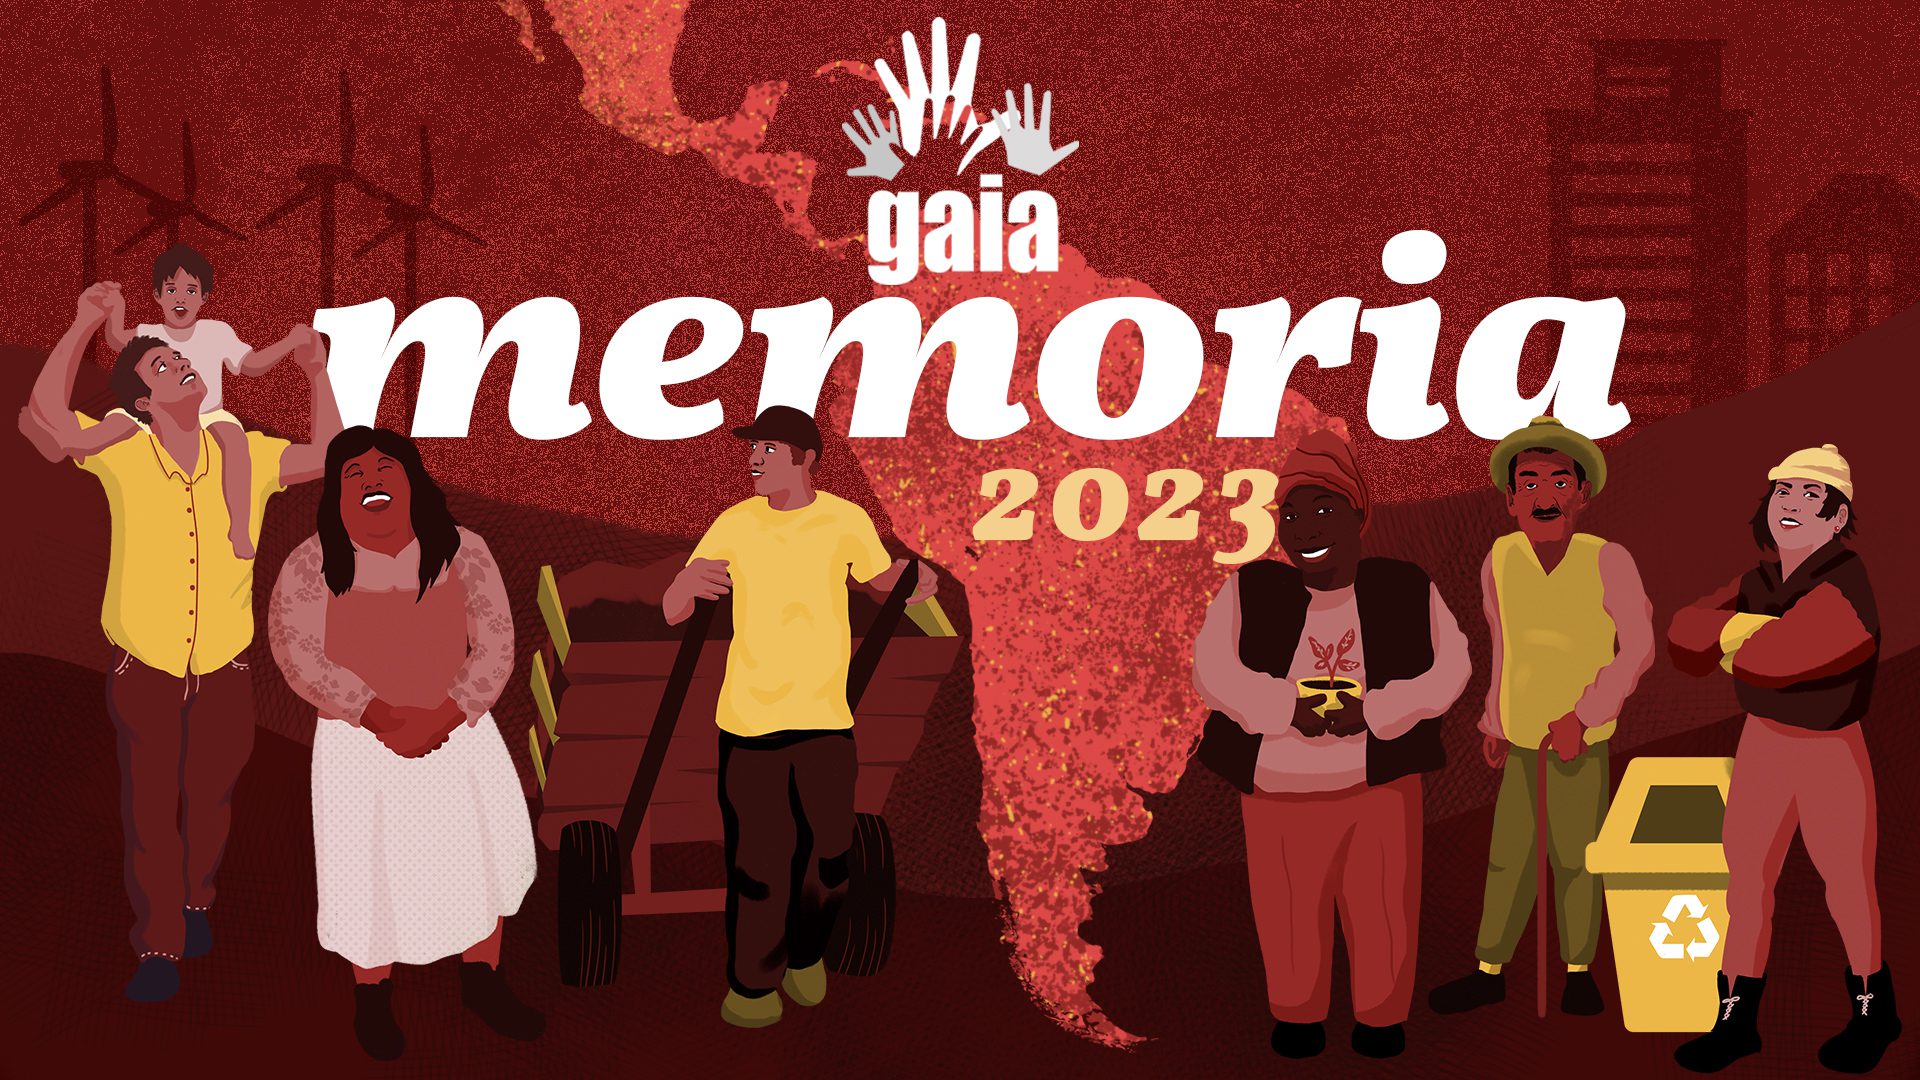 Portada memoria GAIA 2023. Fundo vermelho com um mapa da América Latina e 6 personagens ilustrados que representam os membros de GAIA.